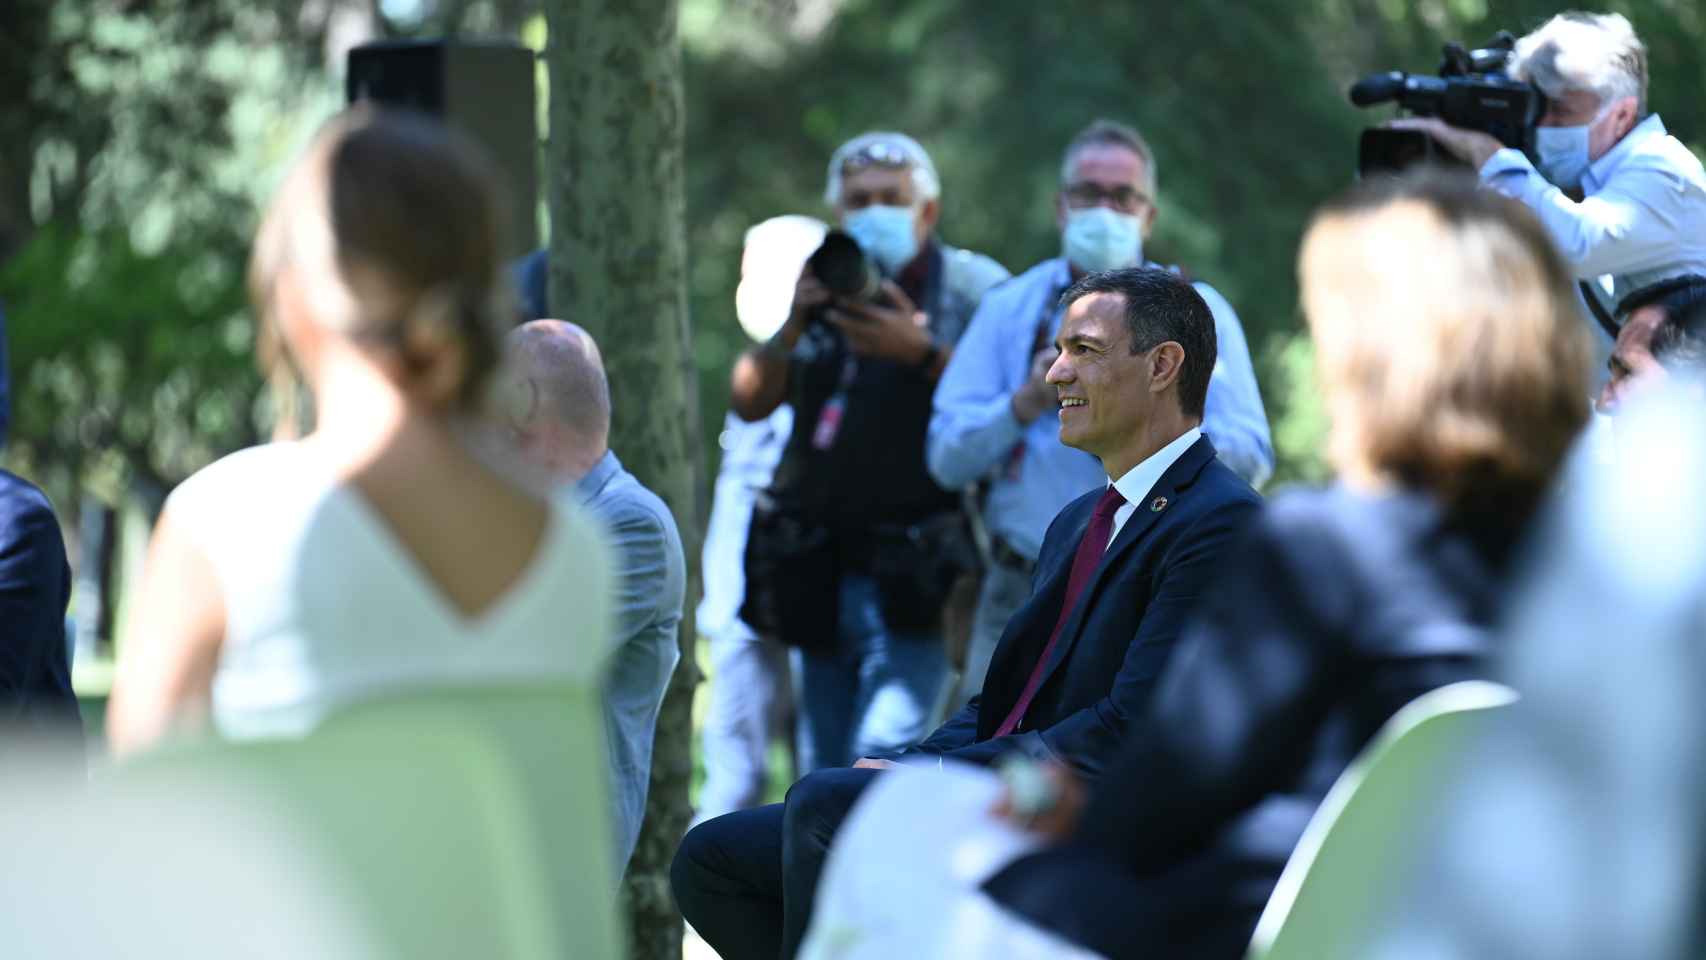 Pedro Sánchez, en los jardines de Moncloa, y la ministra Yolanda Díaz desenfocada y de espaldas.